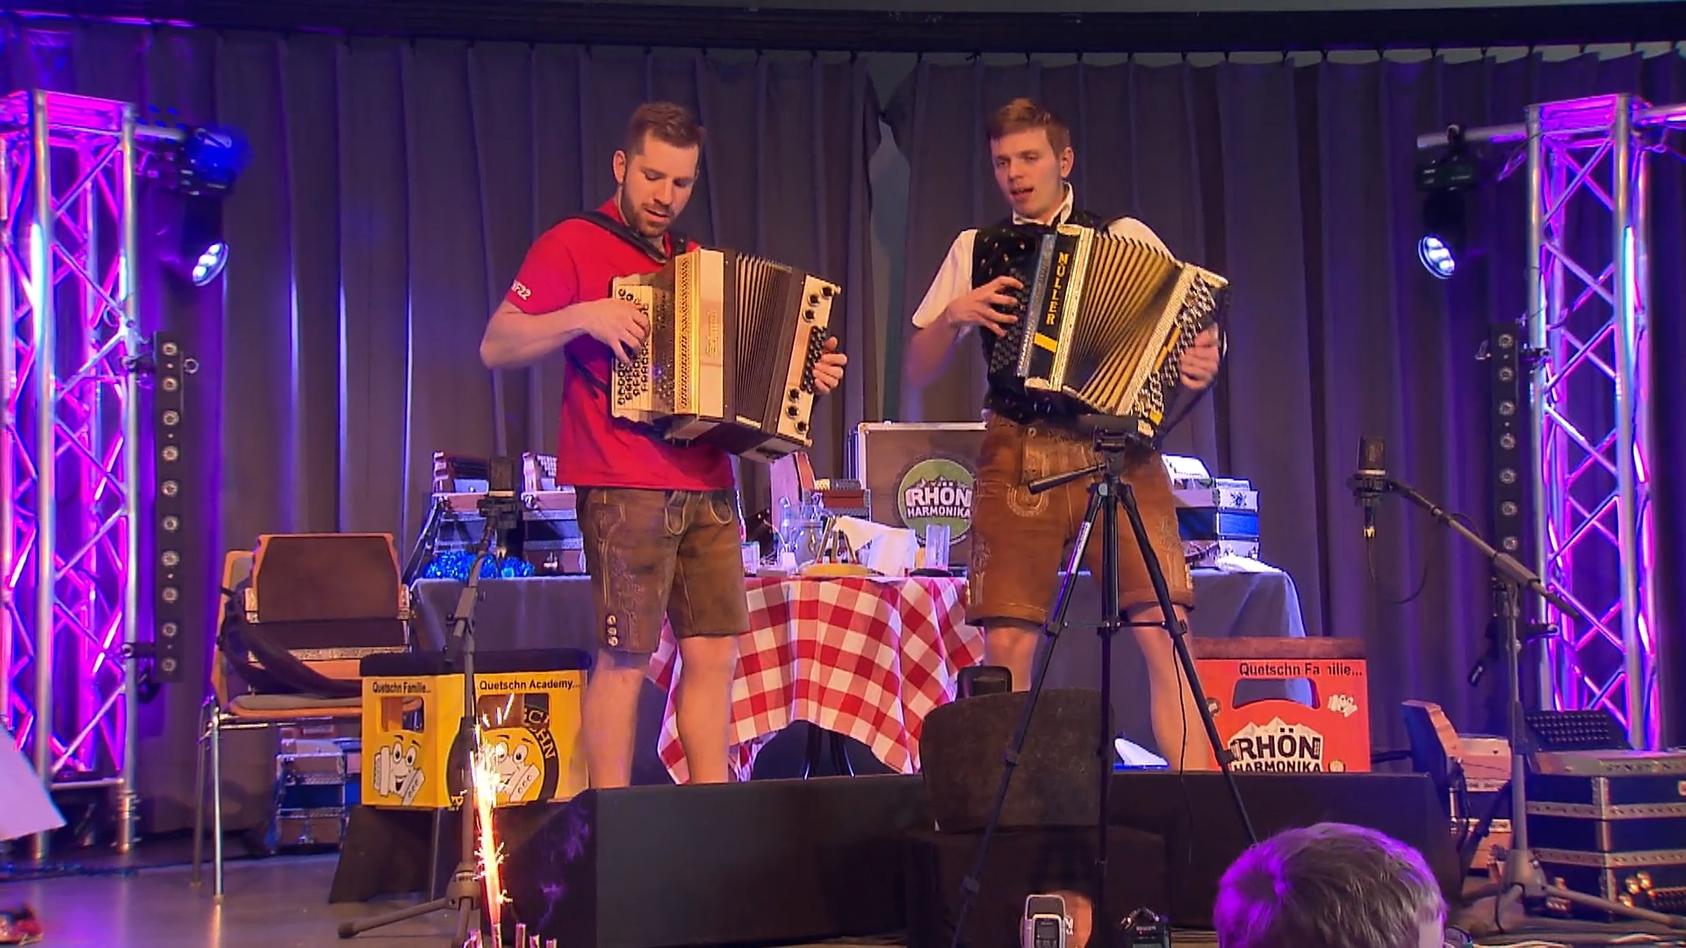 24-Akkordeon-Weltrekord in Hessen! Volksmusik in Endlosschleife